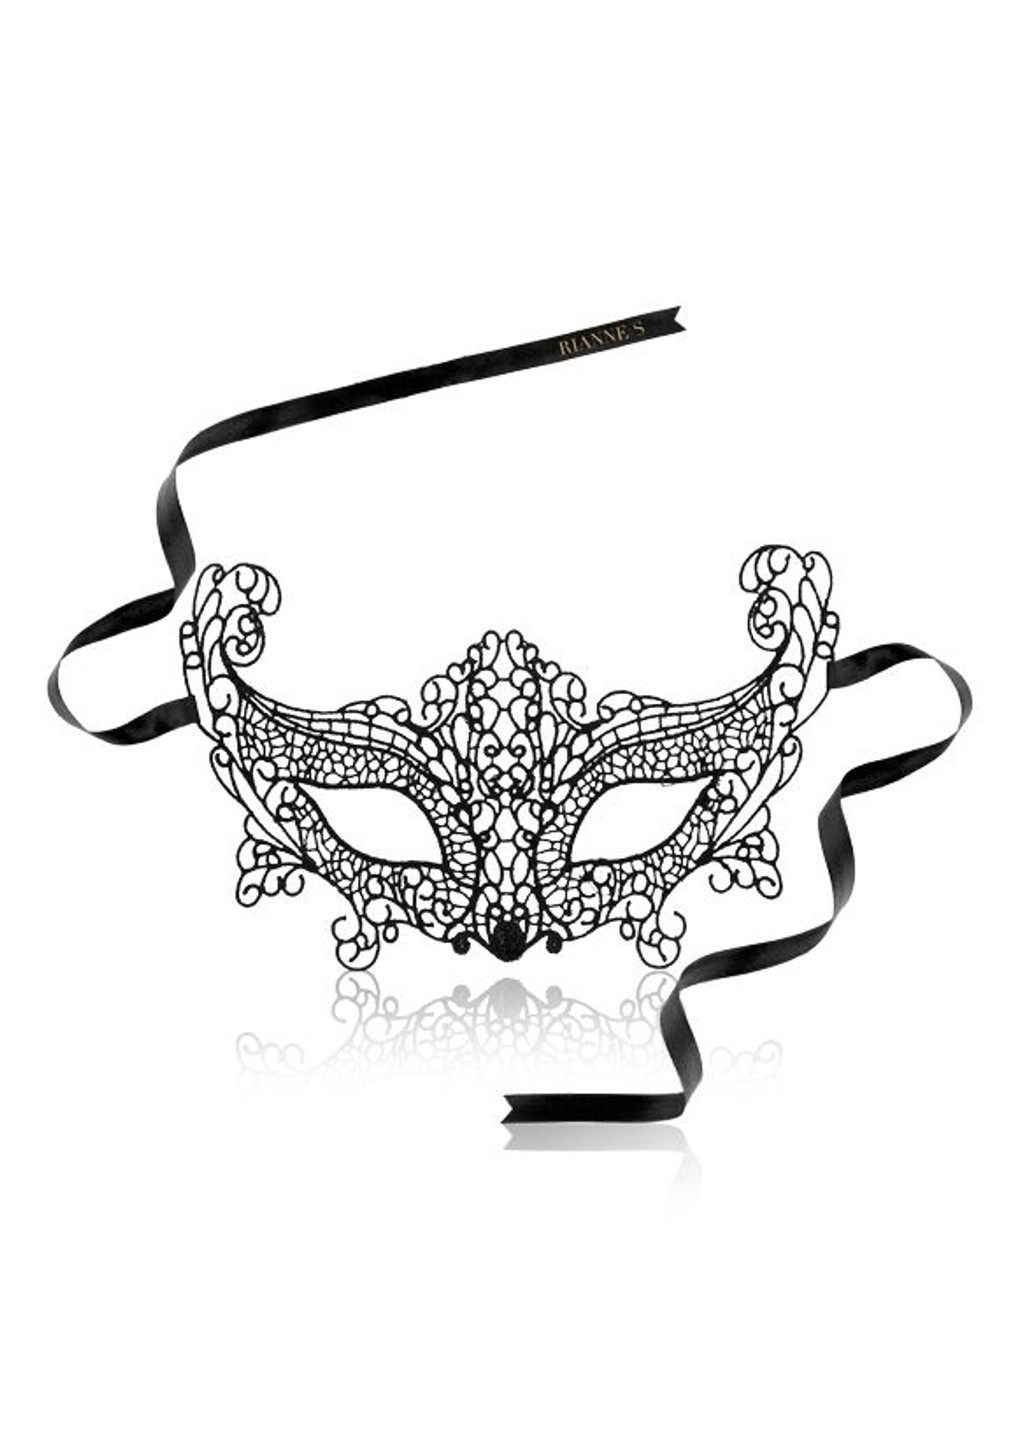 Романтичний подарунковий набір Ana's Trilogy Set III: ерекційне кільце, ажурна маска на обл RIANNE S (257203998)